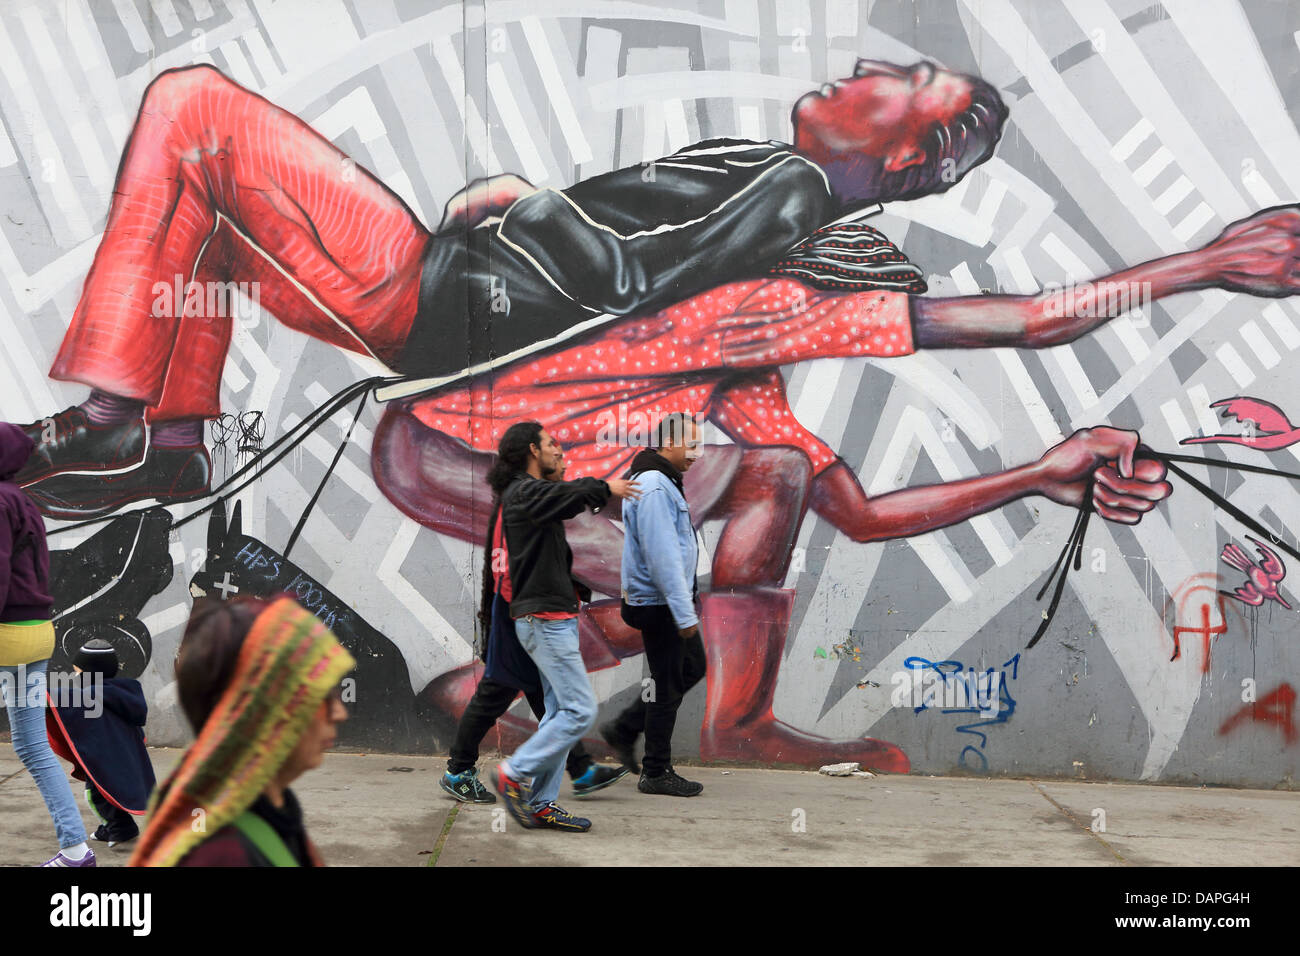 Les piétons marcher passé street art graffiti murale dans barrio de La Candelaria de Bogota, Colombie. Banque D'Images